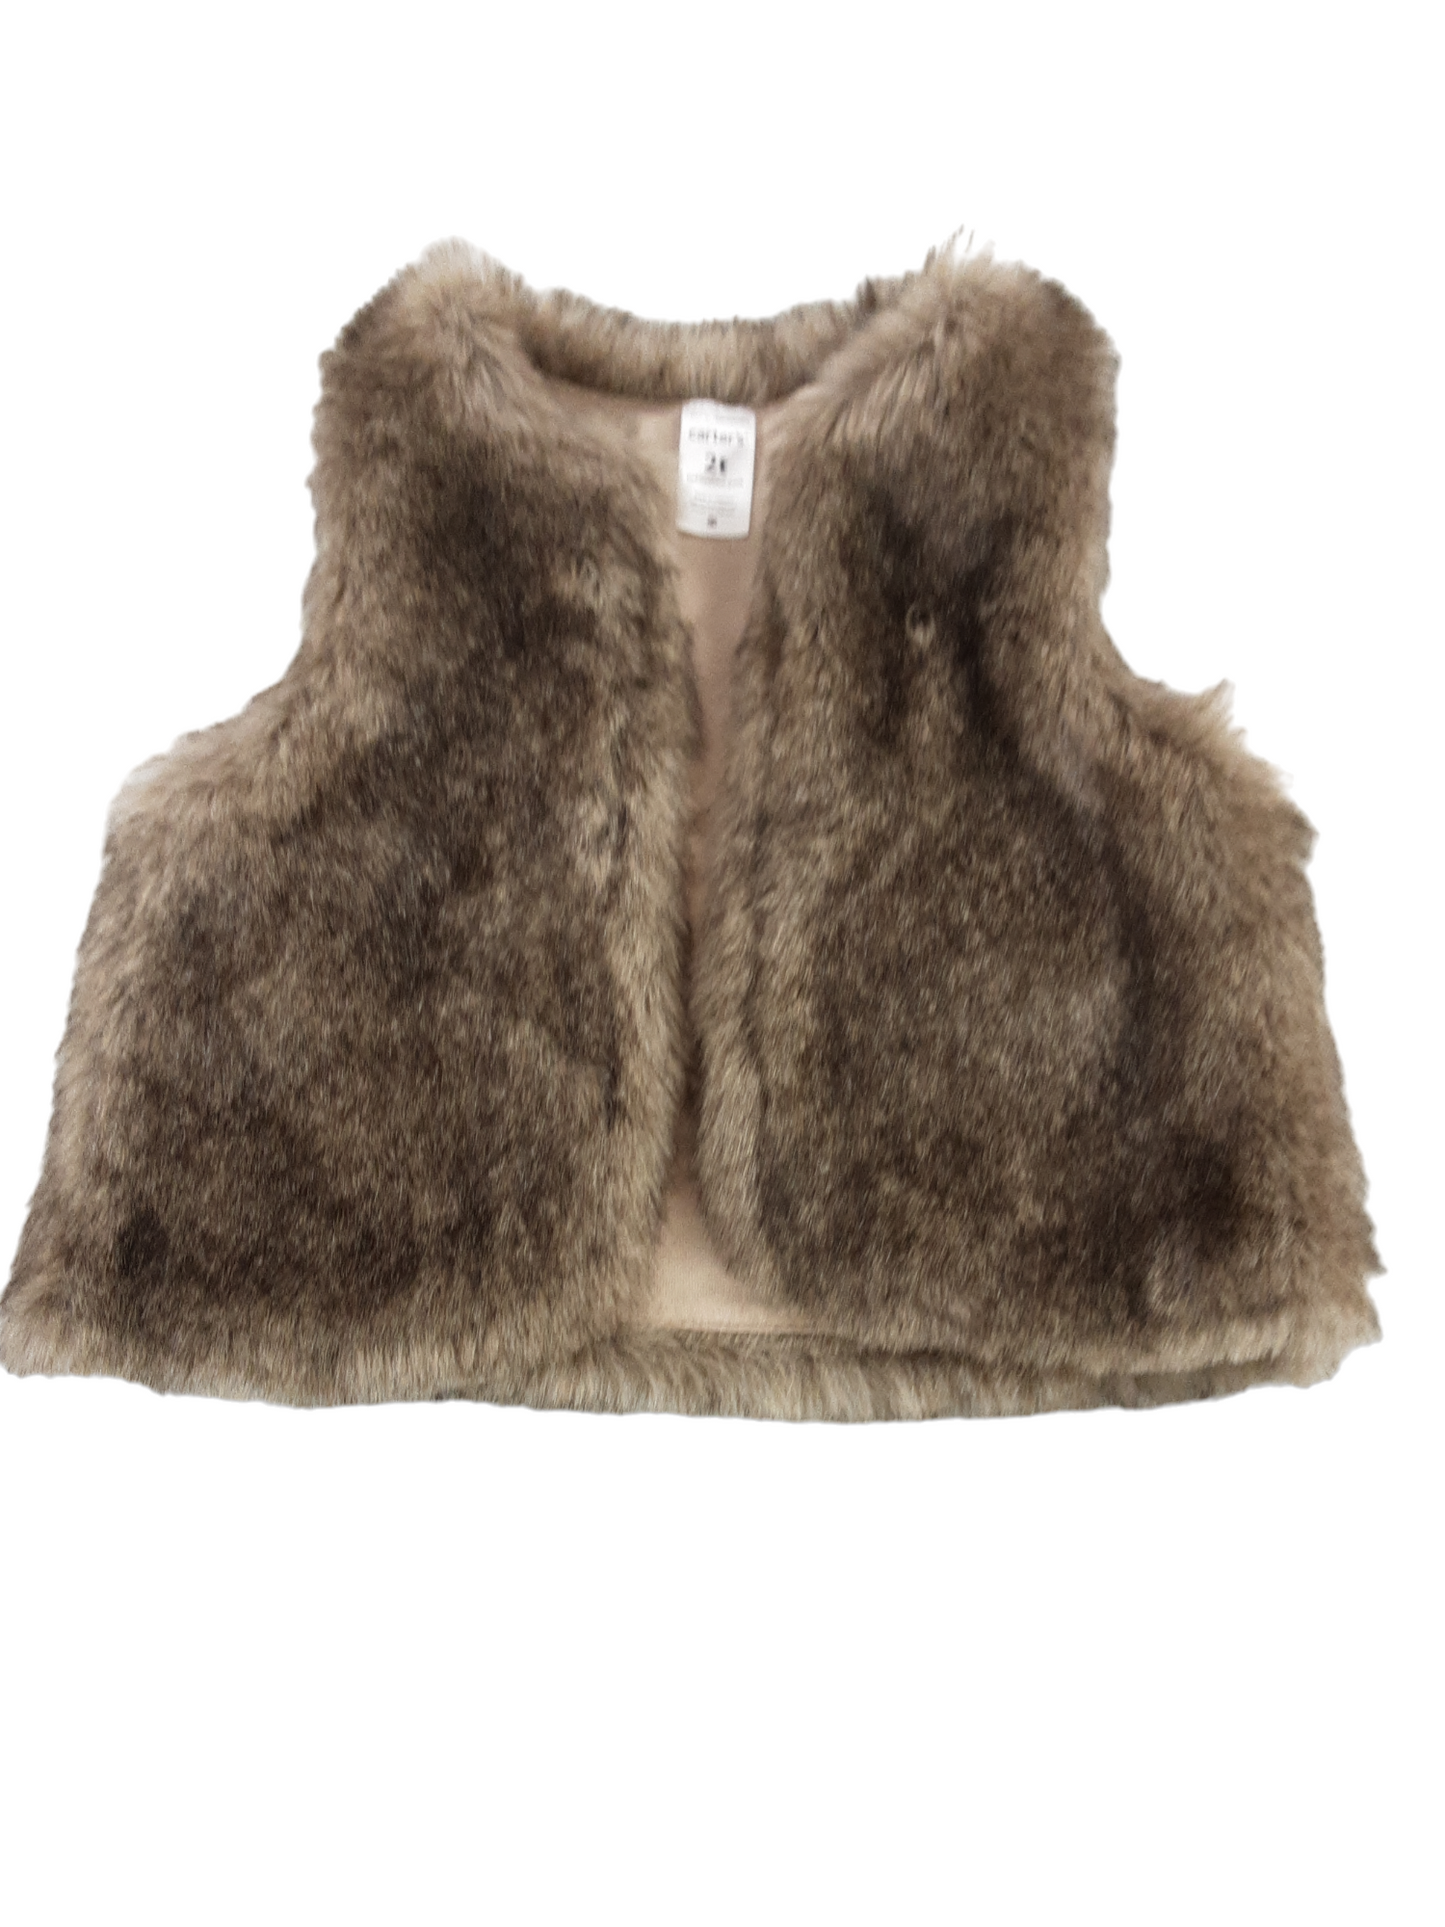 Fur vest size 2